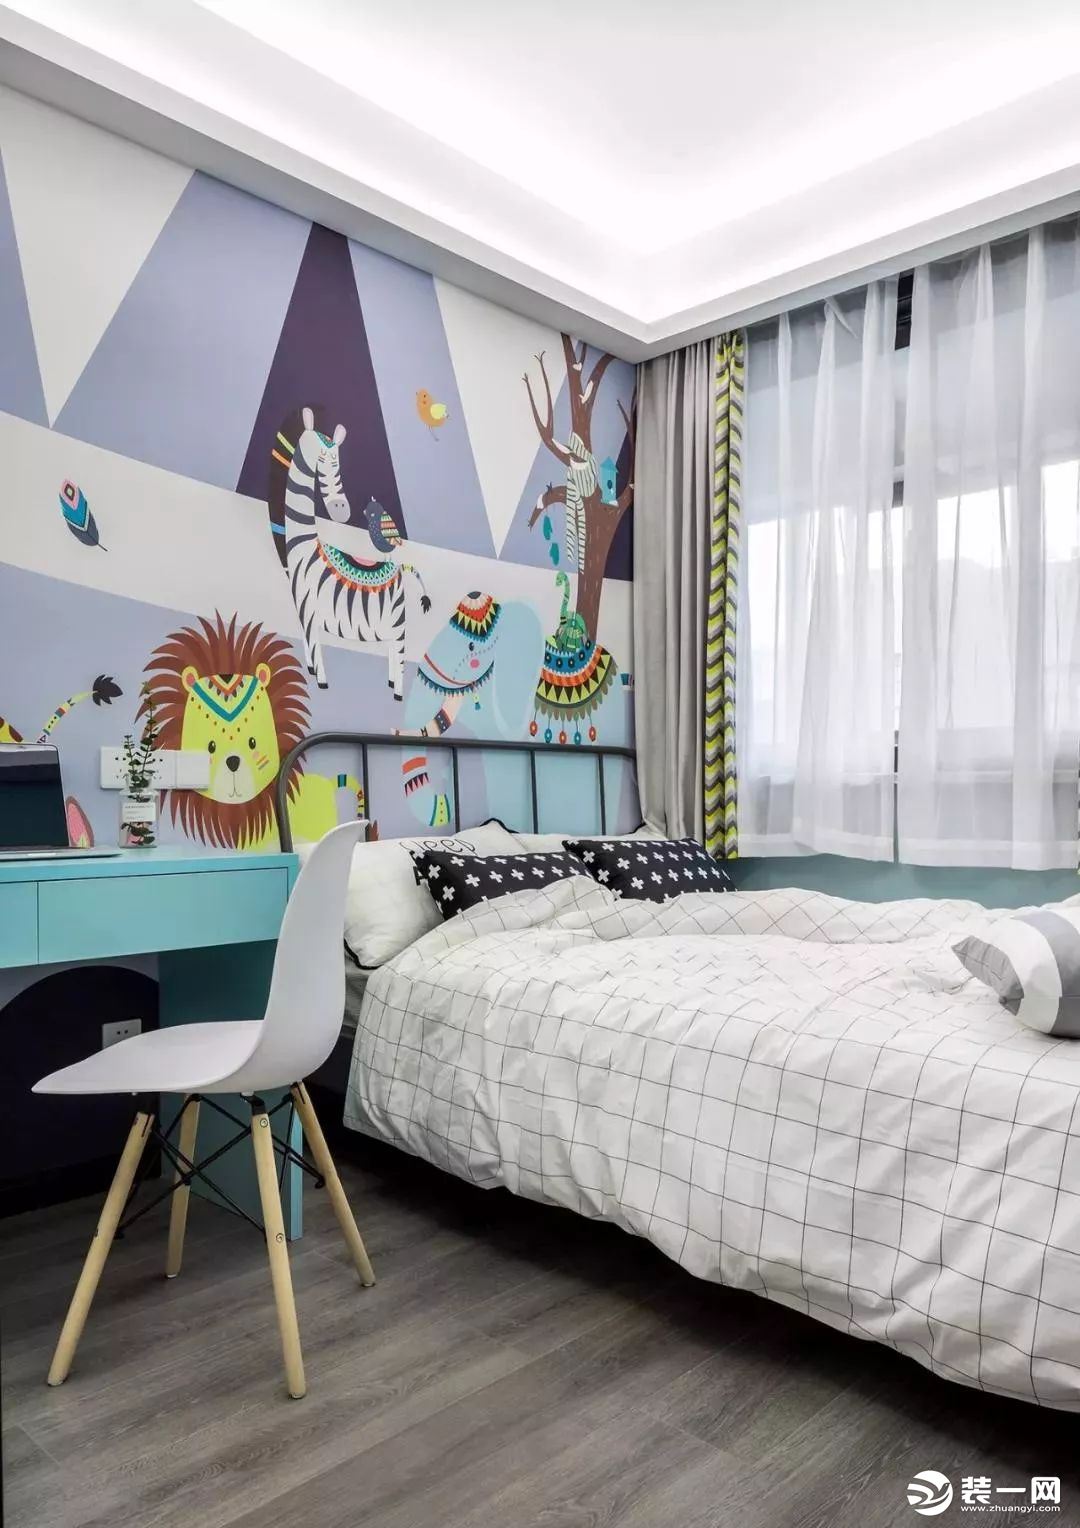 儿童房选择童趣活力满满的彩色壁纸，采用榻榻米的设计，旁边增加了储物功能，旁边的书桌也增加了学习空间。